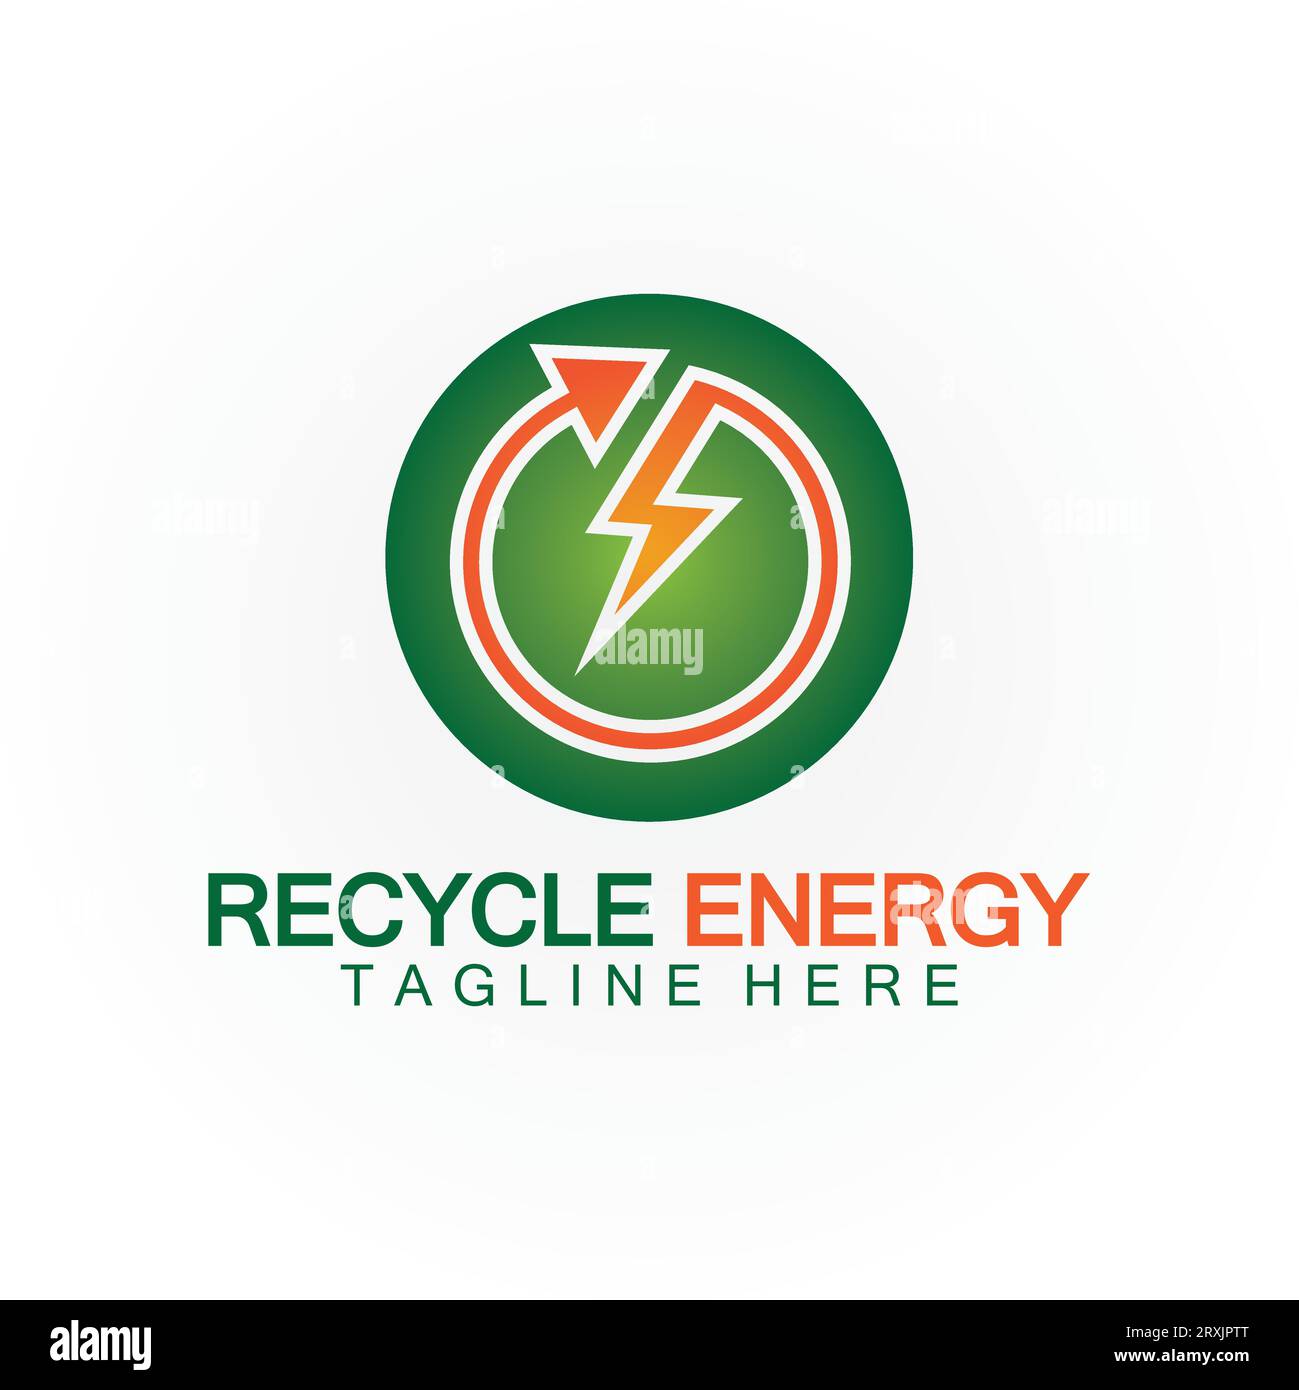 Disegno dell'icona con illustrazione vettoriale del logo Recycle Energy Recycle Power Illustrazione Vettoriale